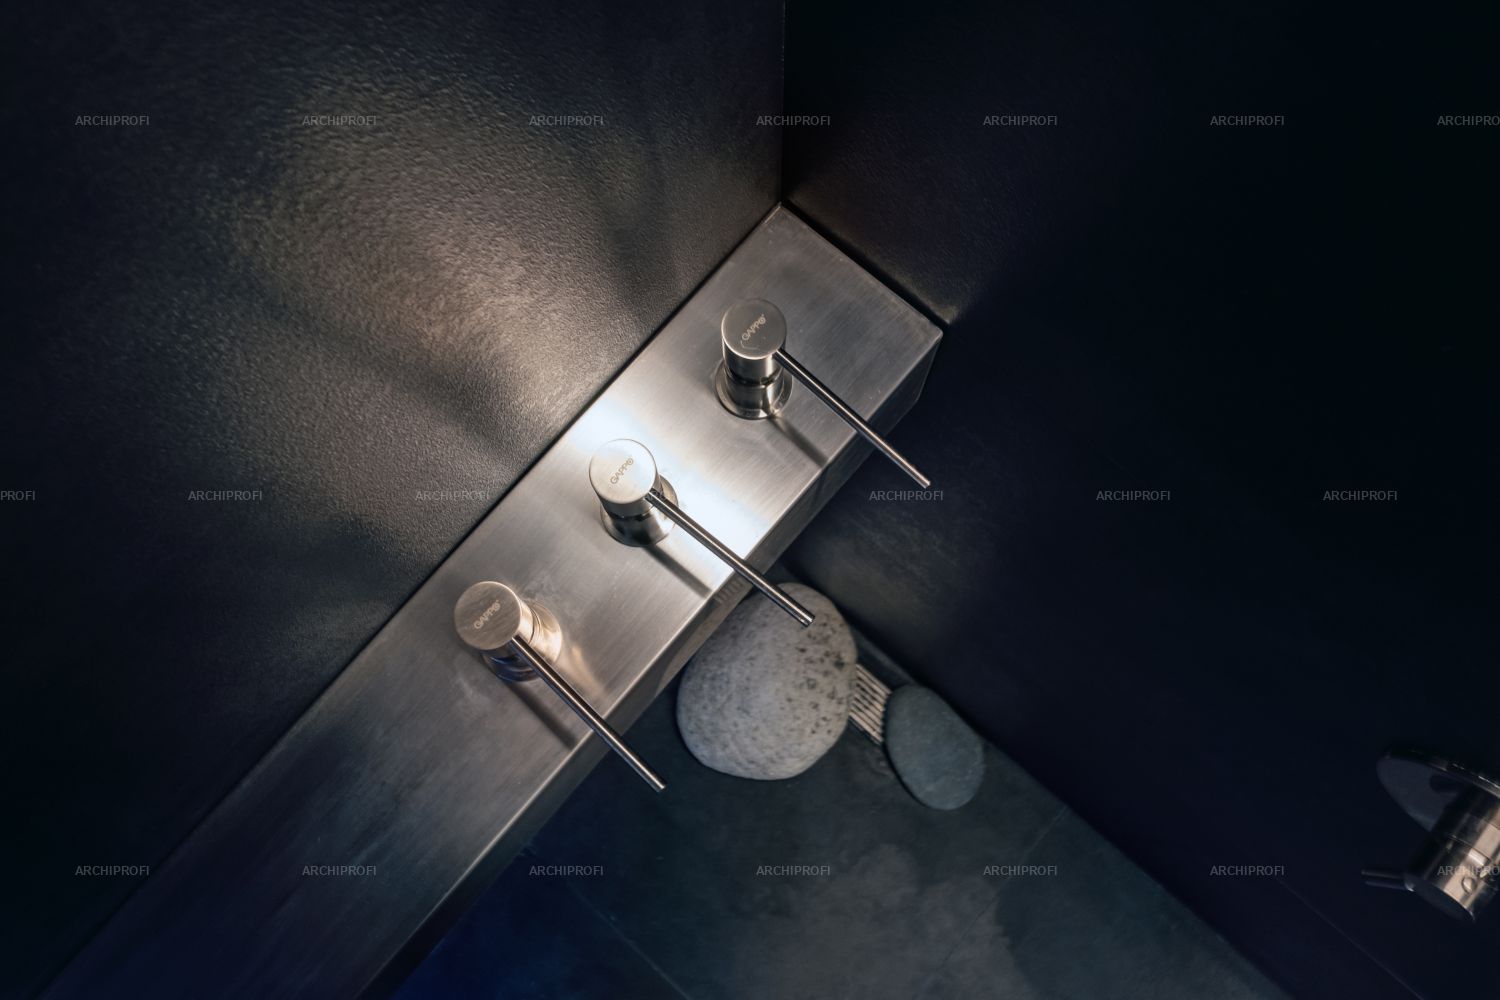 Фото интерьера, Ванная комната площадью 290 кв.м. в стиле Минимализм. Проект 16.10.2021/939367 - D.O.M.+290M2, Автор проекта: Архитекторы Sergey N A S E D K I ­N